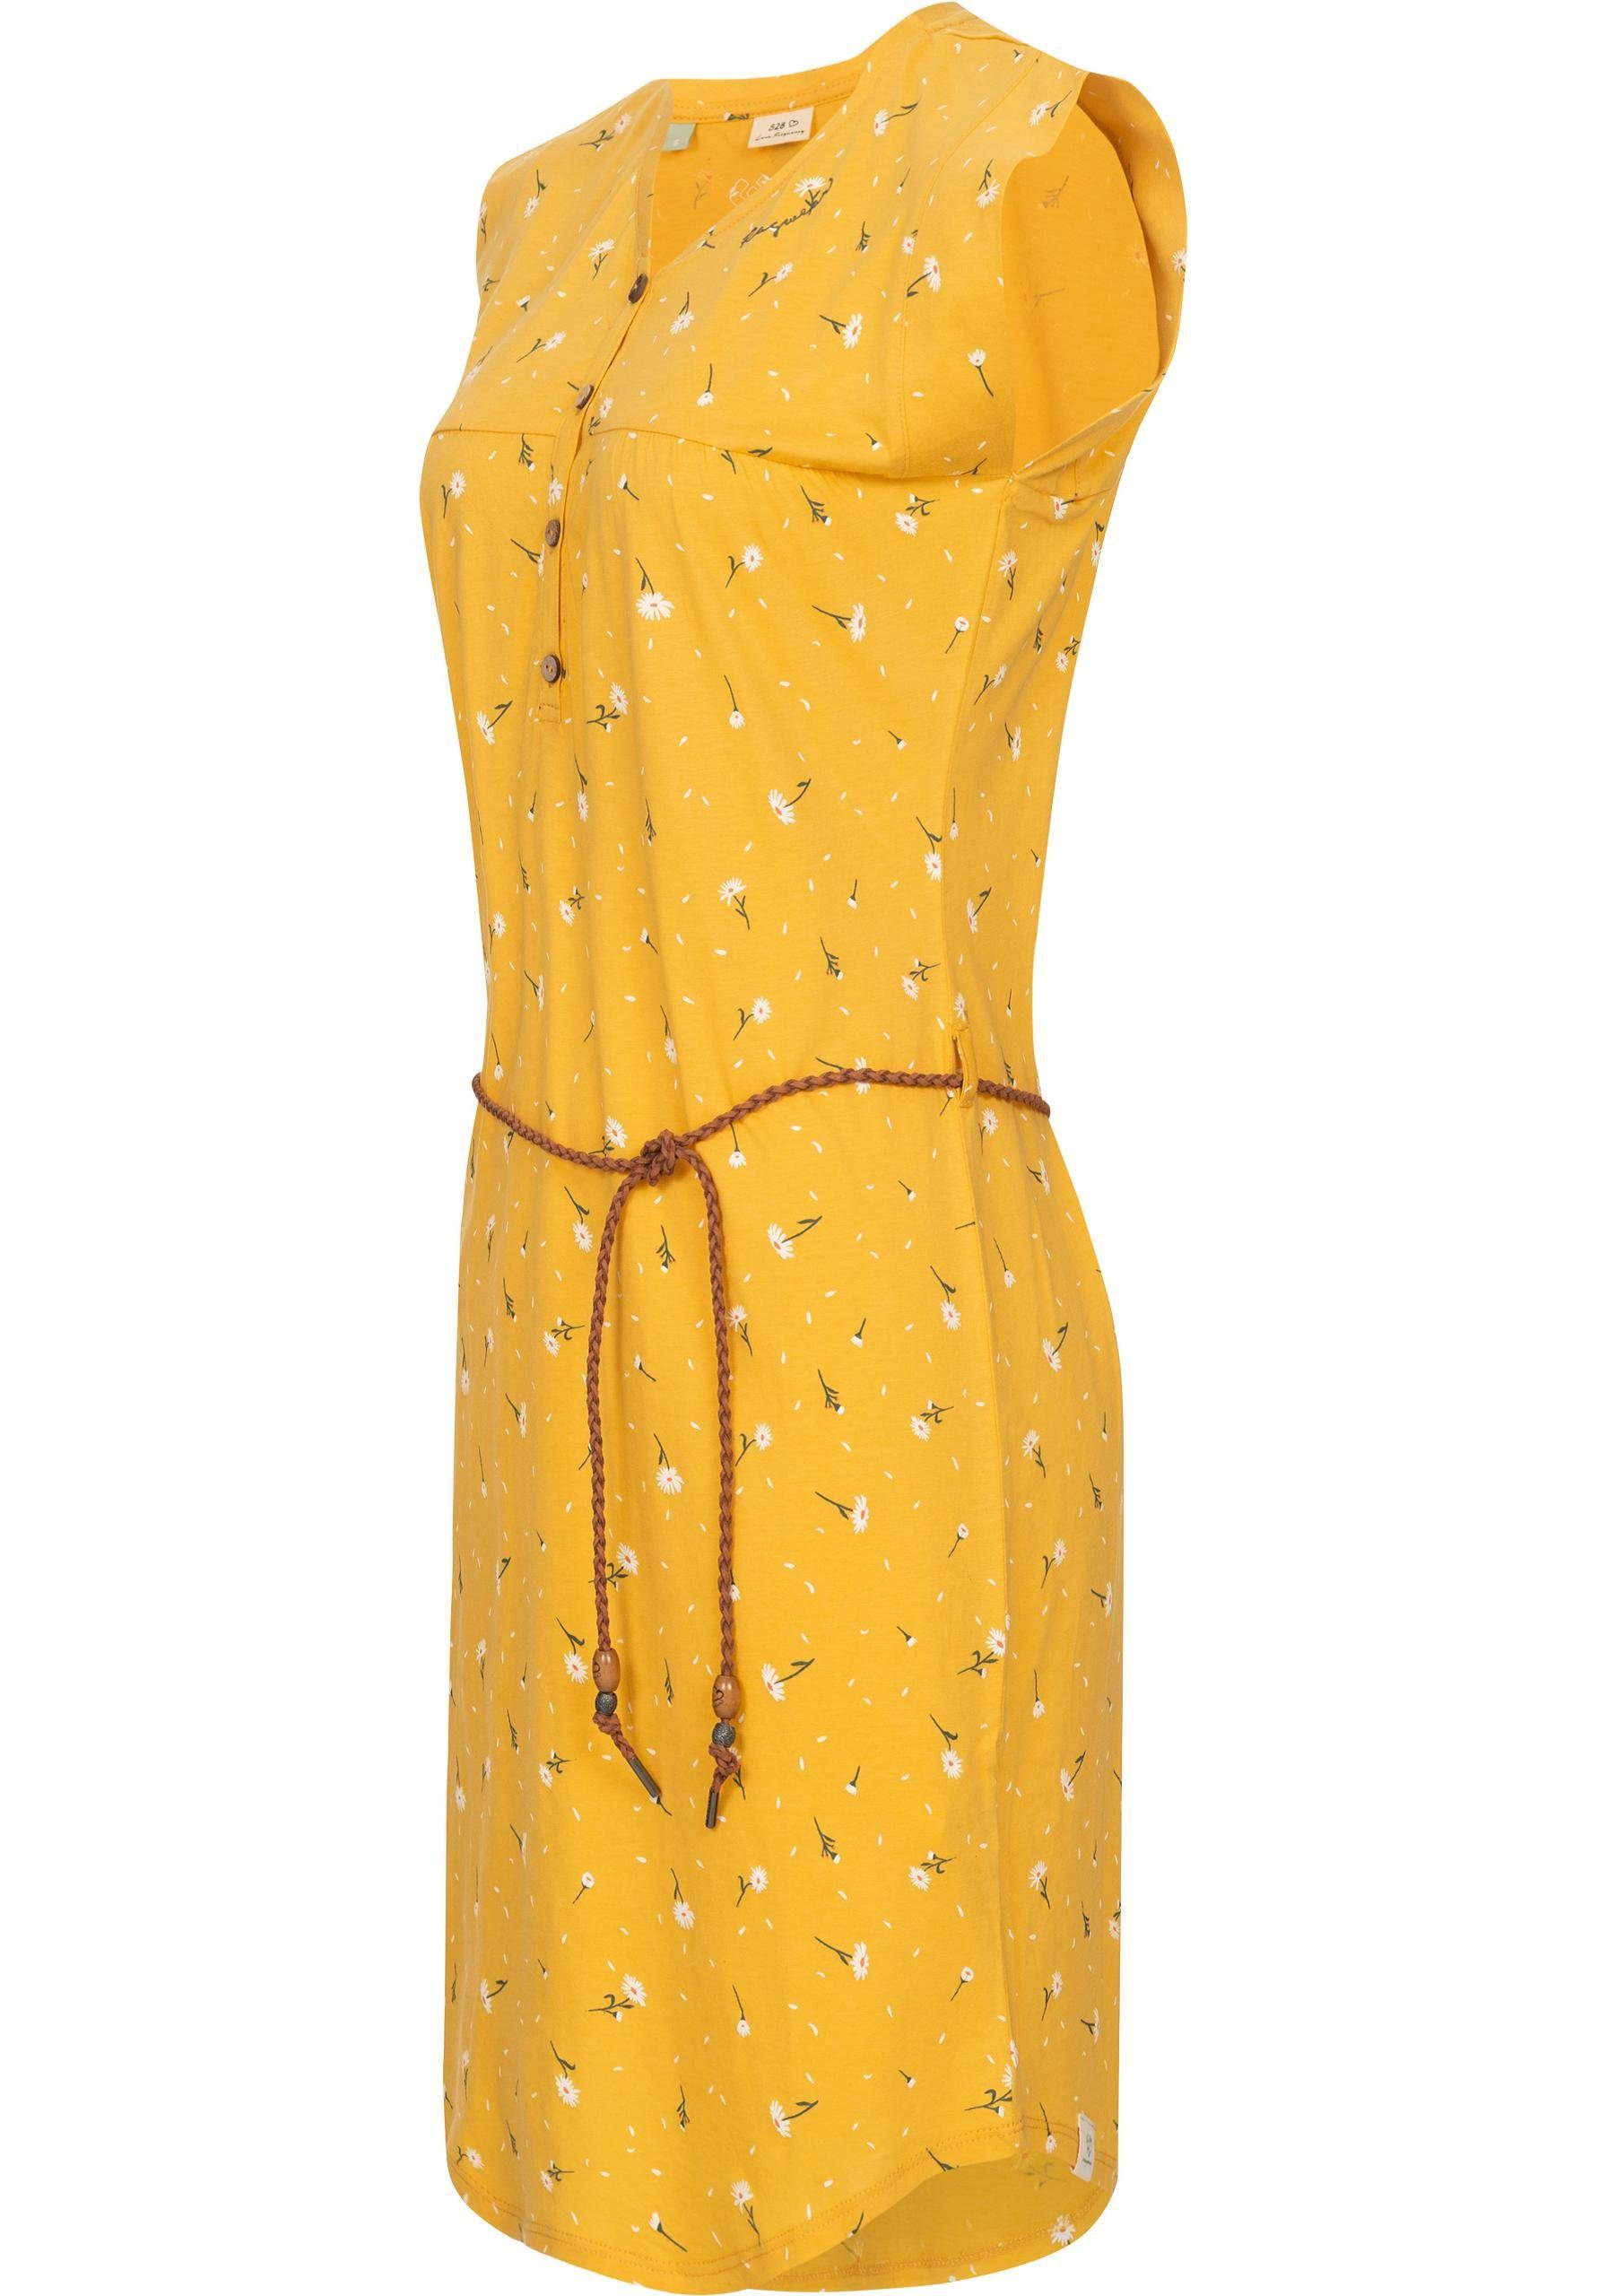 Hochwertige Dress leichtes Qualität Ragwear und Print, Verarbeitung, fällt Zofka sommerlichem Organic Kleid leicht locker mit Jersey Sommerkleid